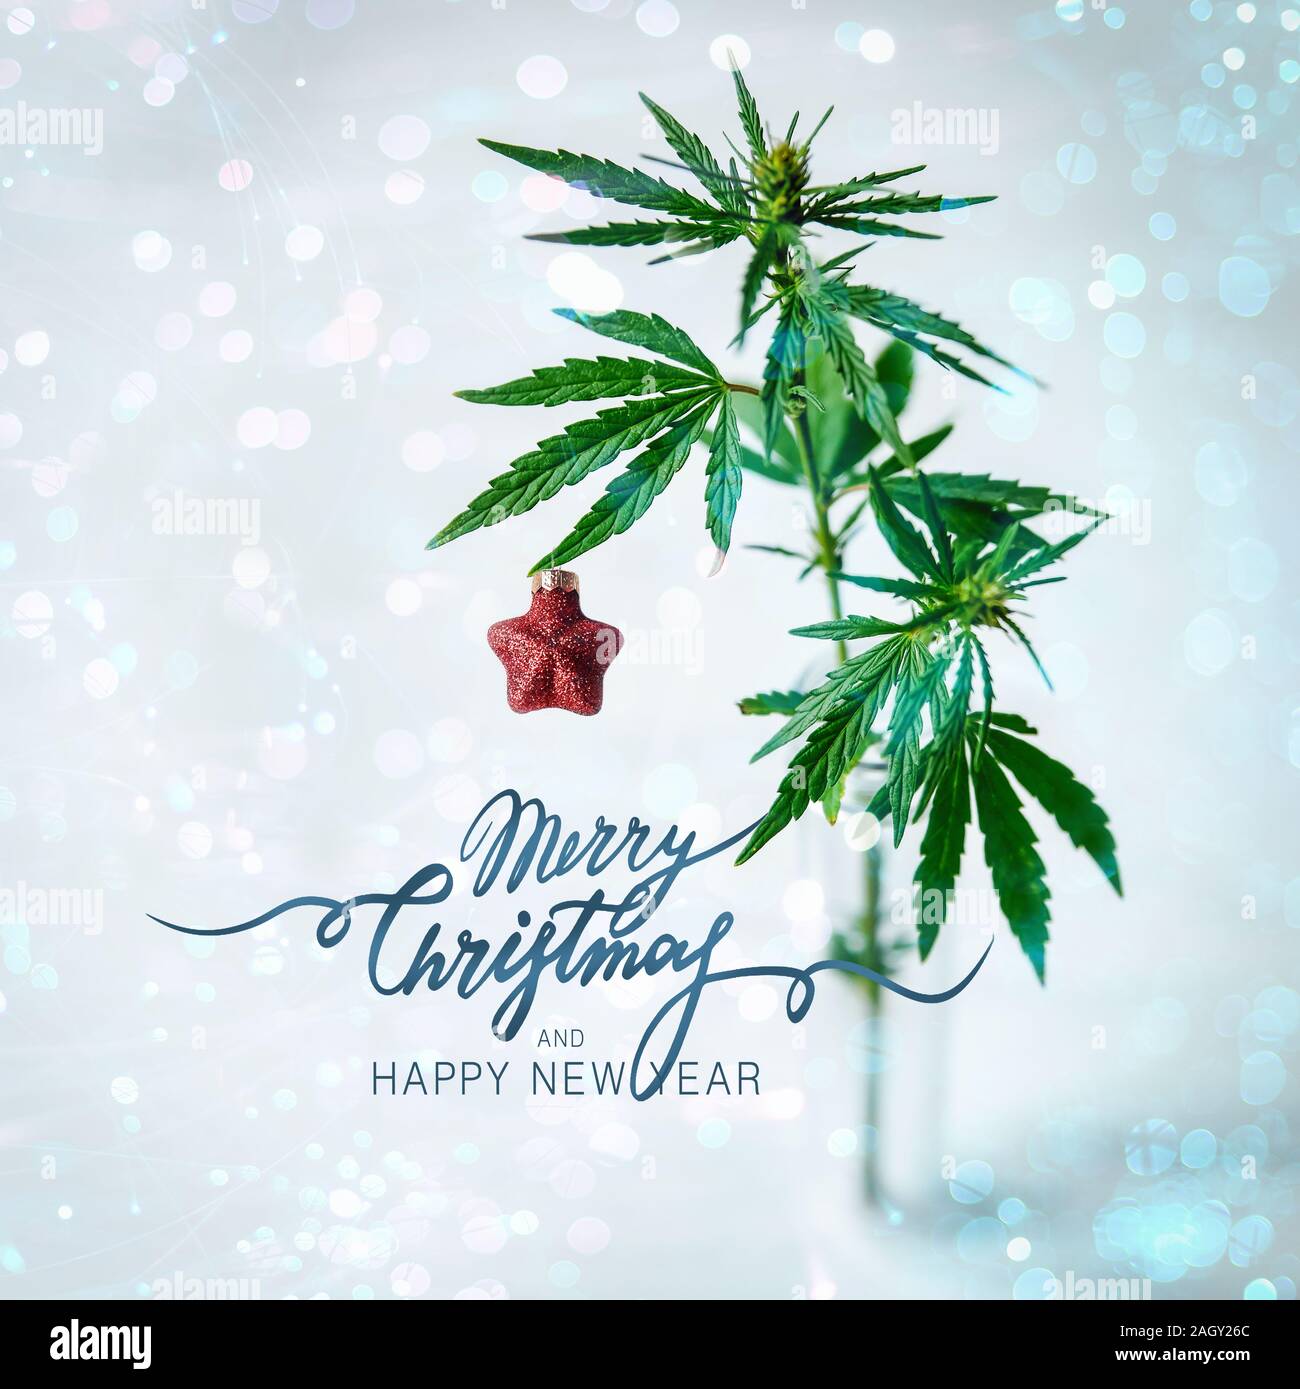 Feuille de Cannabis et bush avec décoration de Noël. Arrière-plan de fête. Joyeux noël carré lettrage Banque D'Images